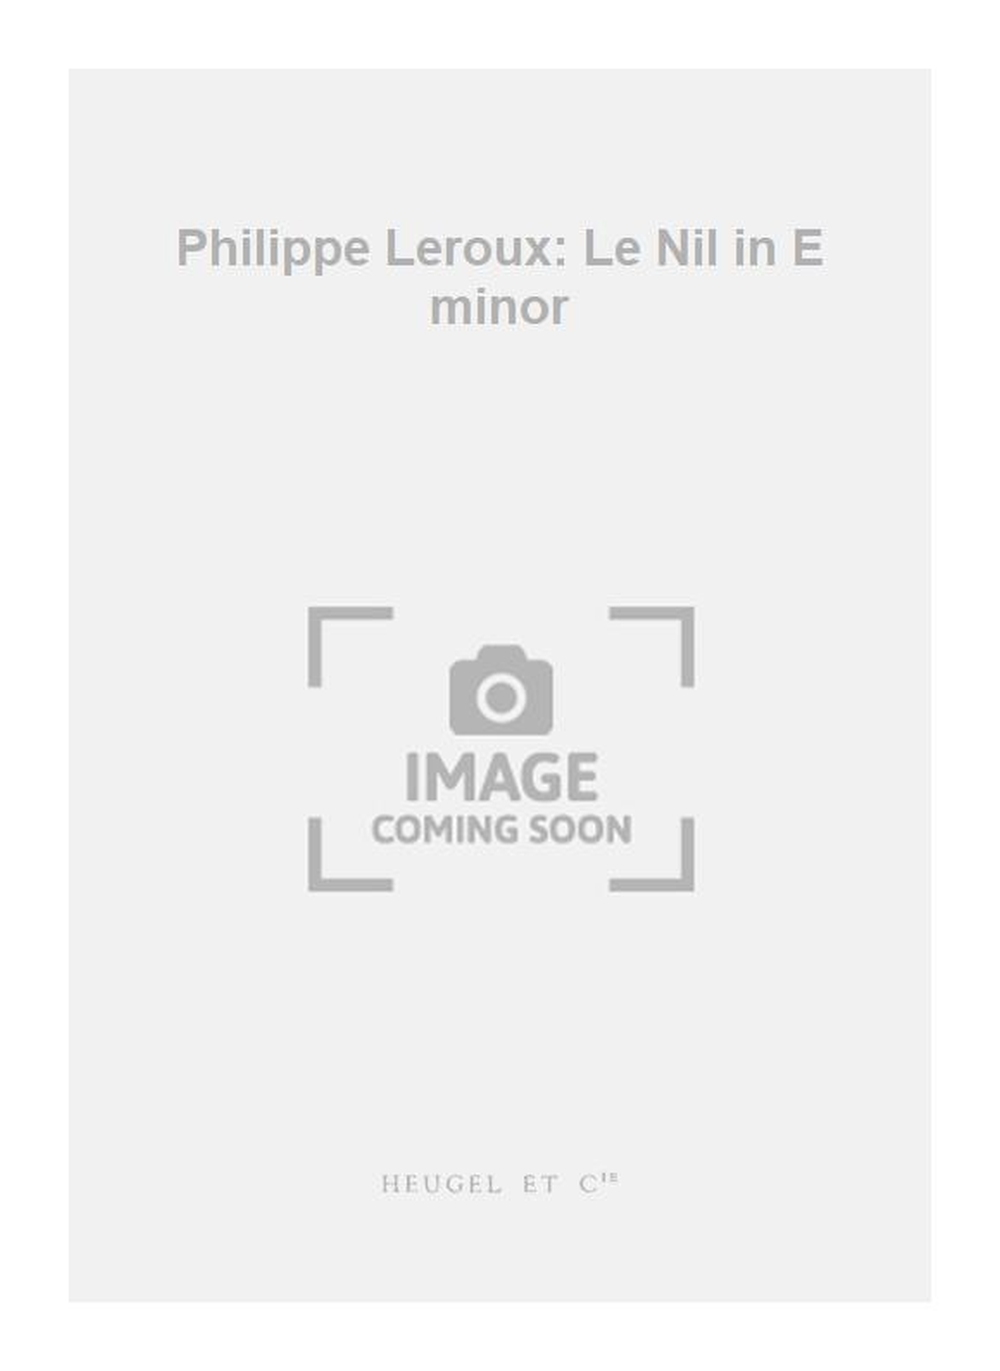 Philippe Leroux: Philippe Leroux: Le Nil in E minor